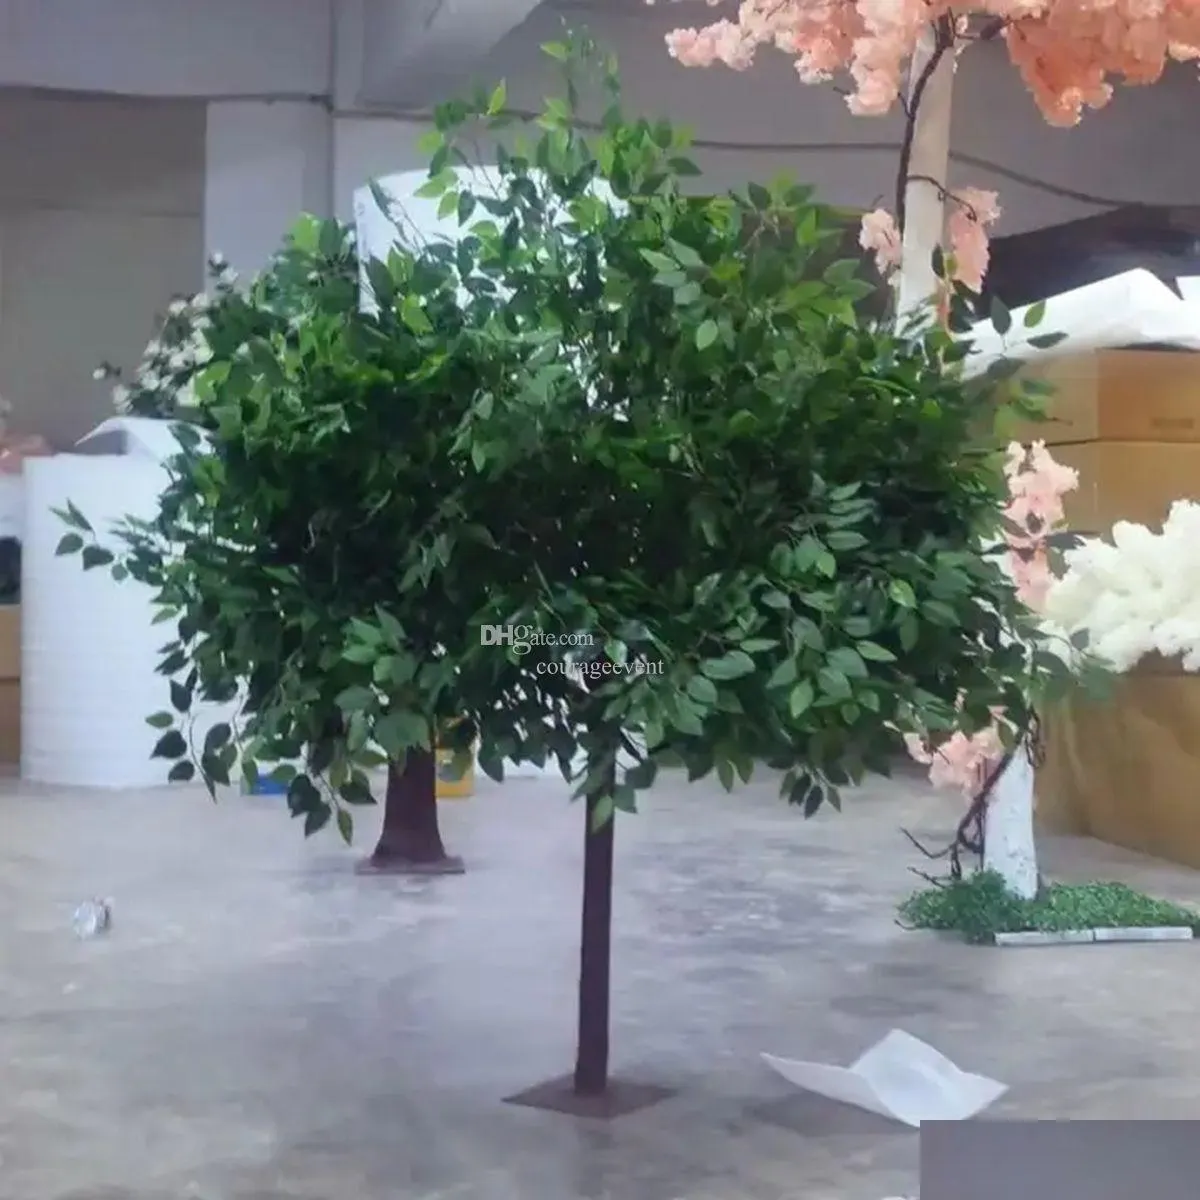 Décoration de fête PE Matériel d'arbre de plante artificielle pour la livraison intérieure ou extérieure Livraison de jardin à domicile Fournitures de fête Événement DHD8G